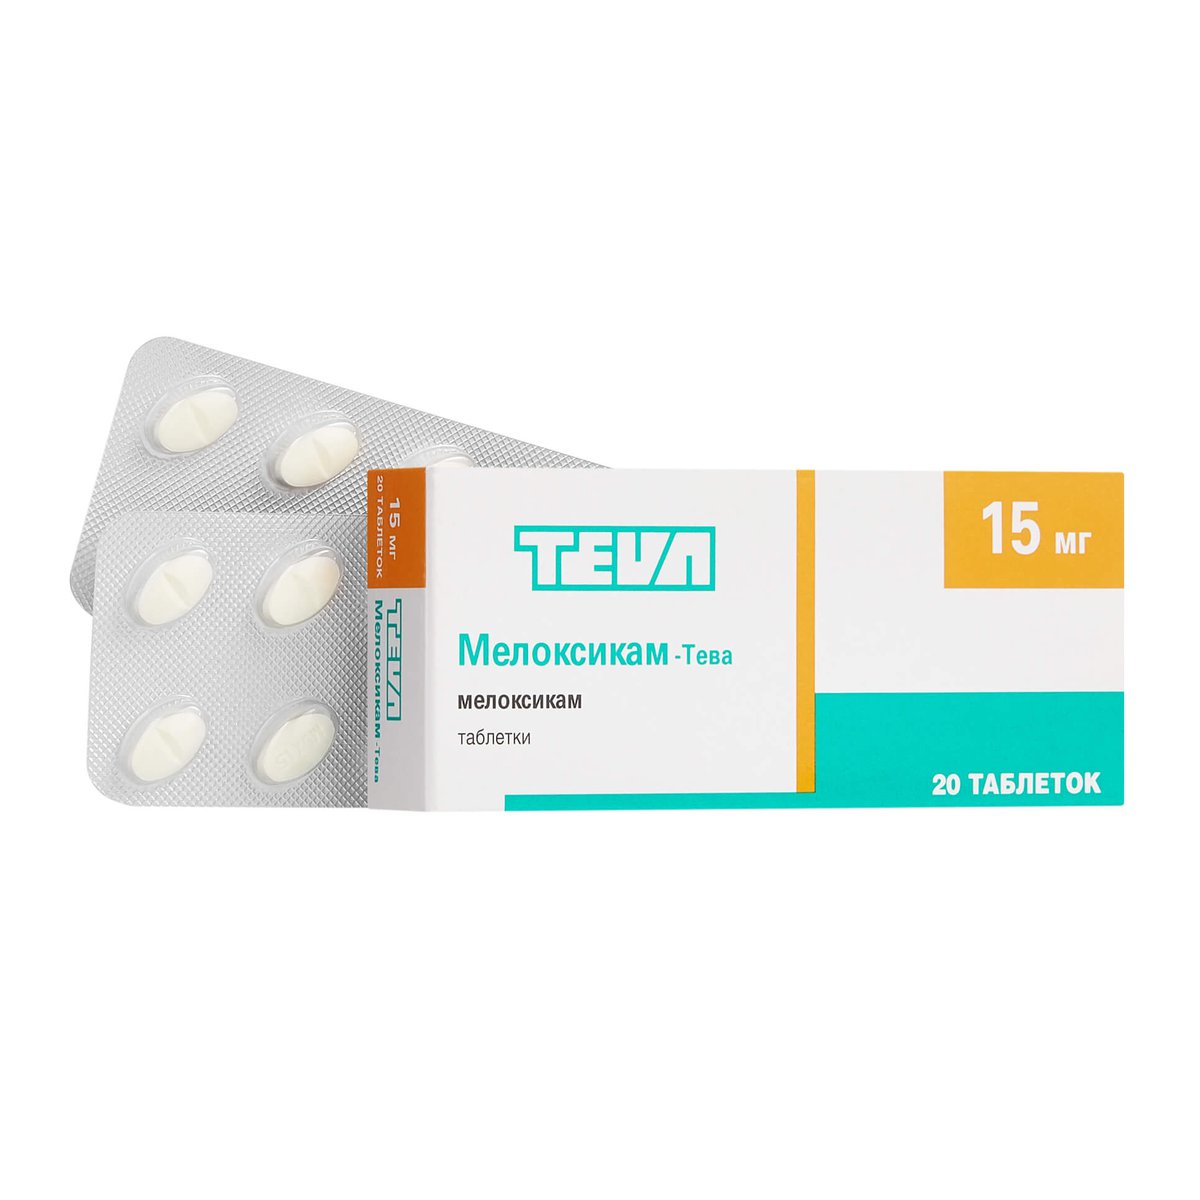 Мелоксикам-Тева (таблетки, 20 шт, 15 мг) - цена,  онлайн  .